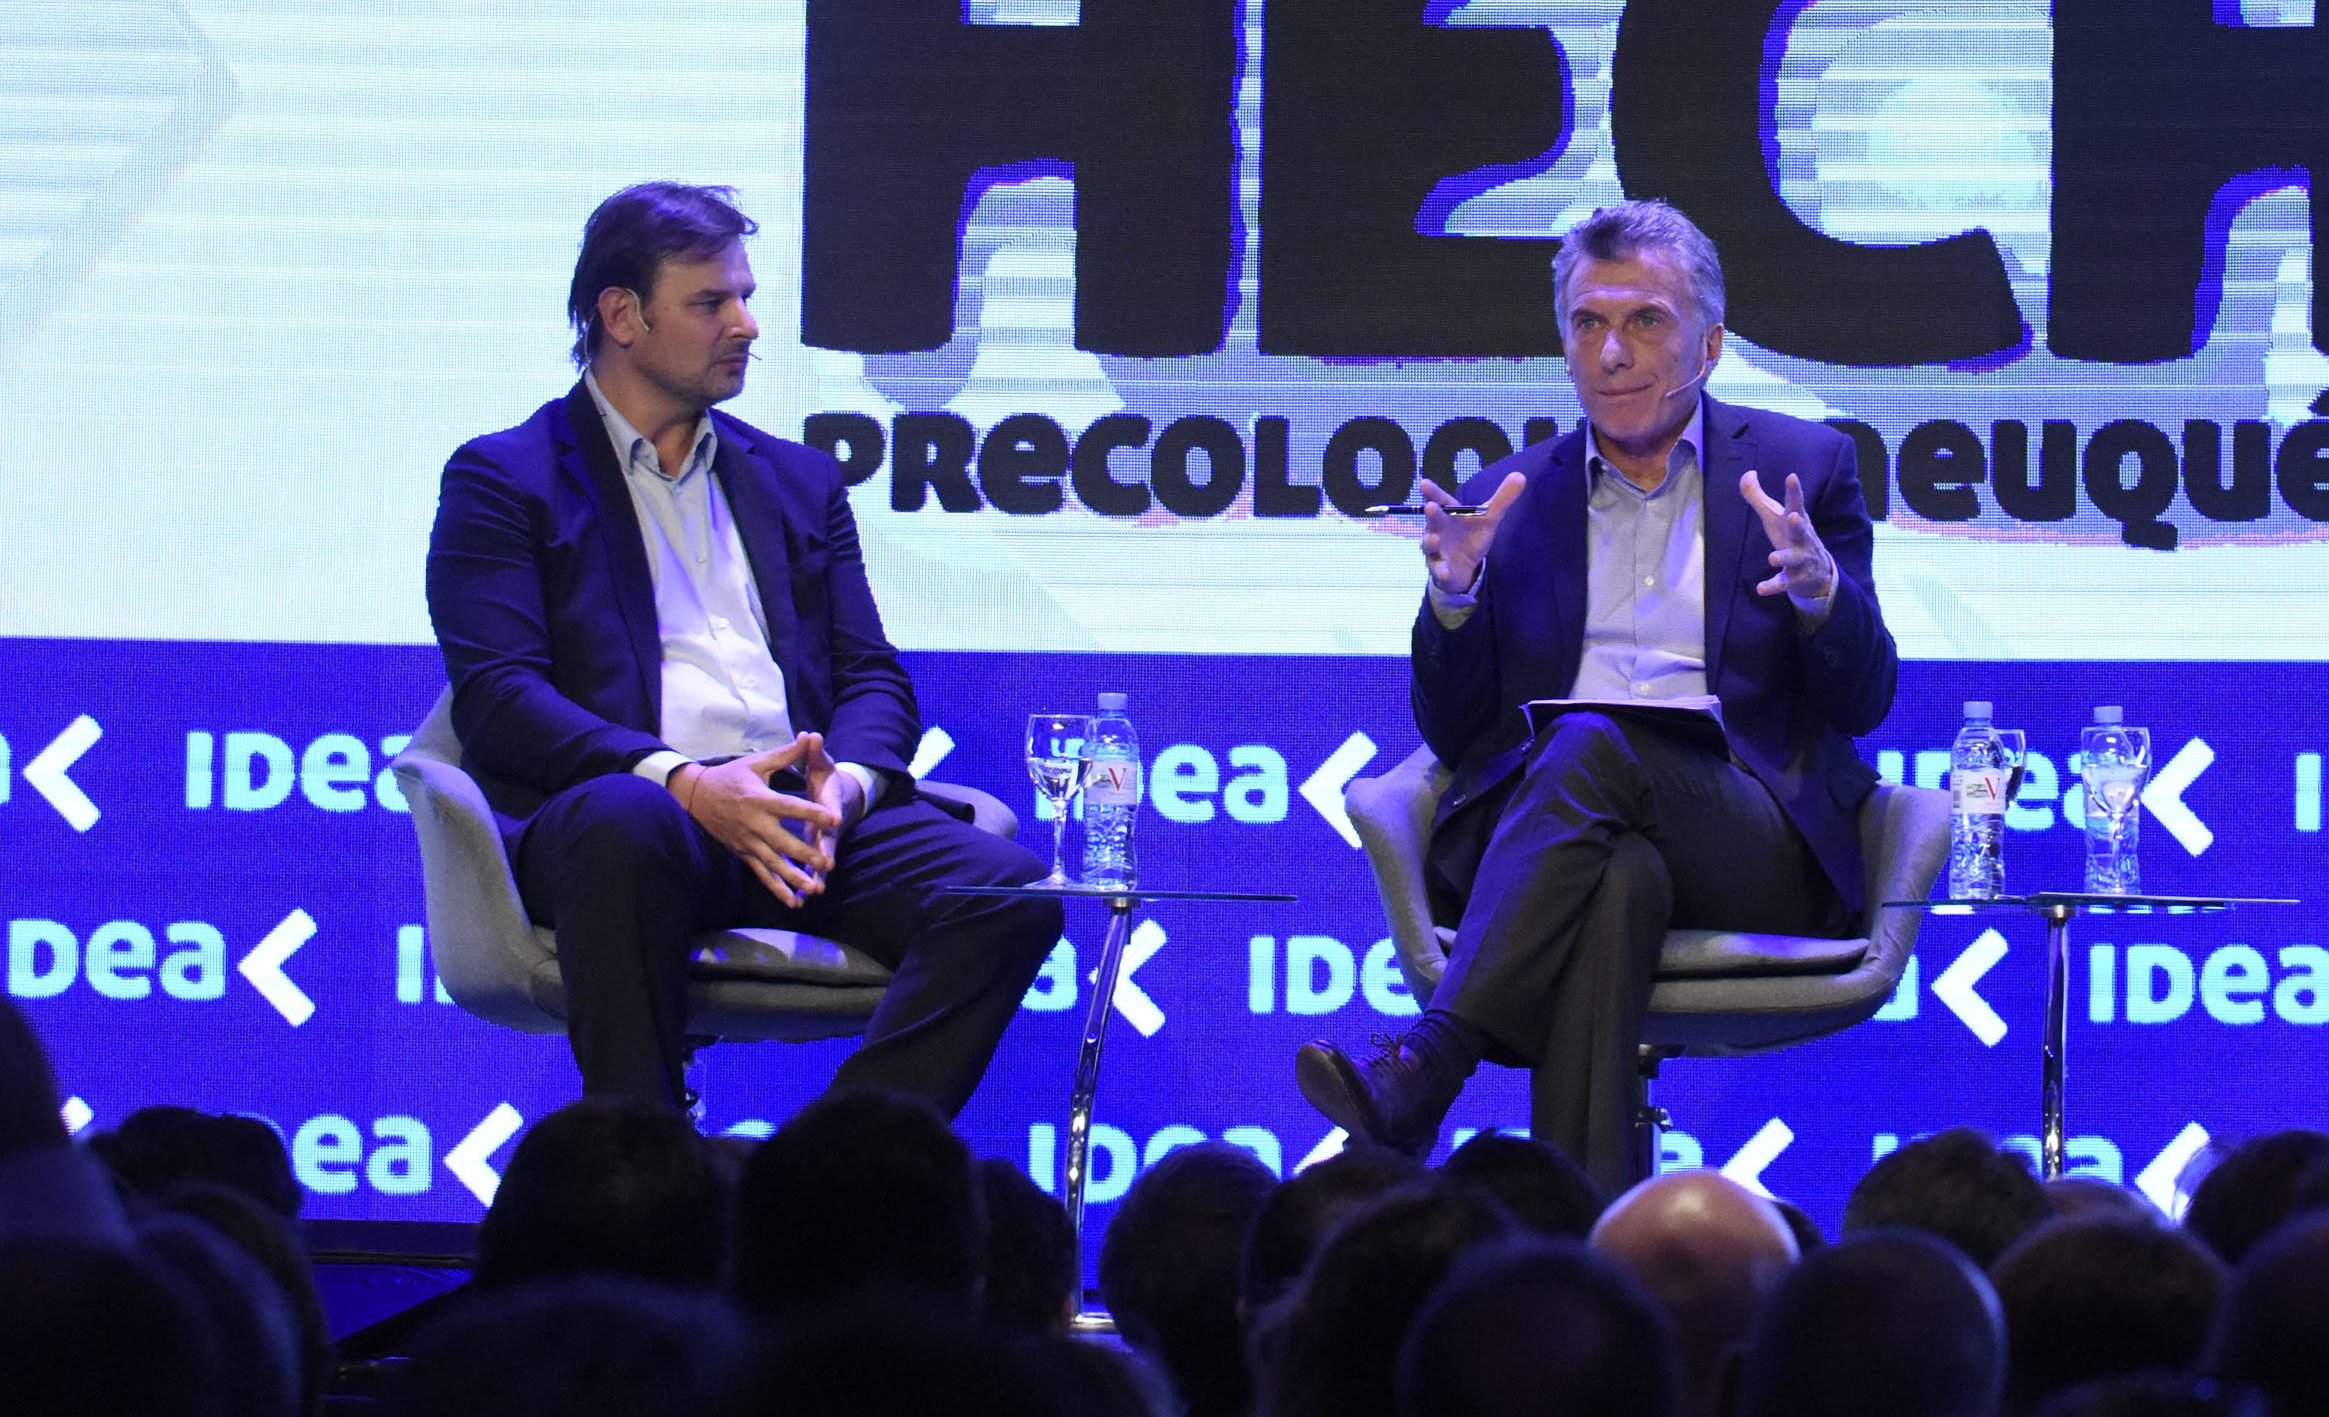 Gastón Remy fue uno de los entrevistadores del presidente Mauricio Macri en el precoloquio experienca IDEA que se realizó en Neuquén en junio.